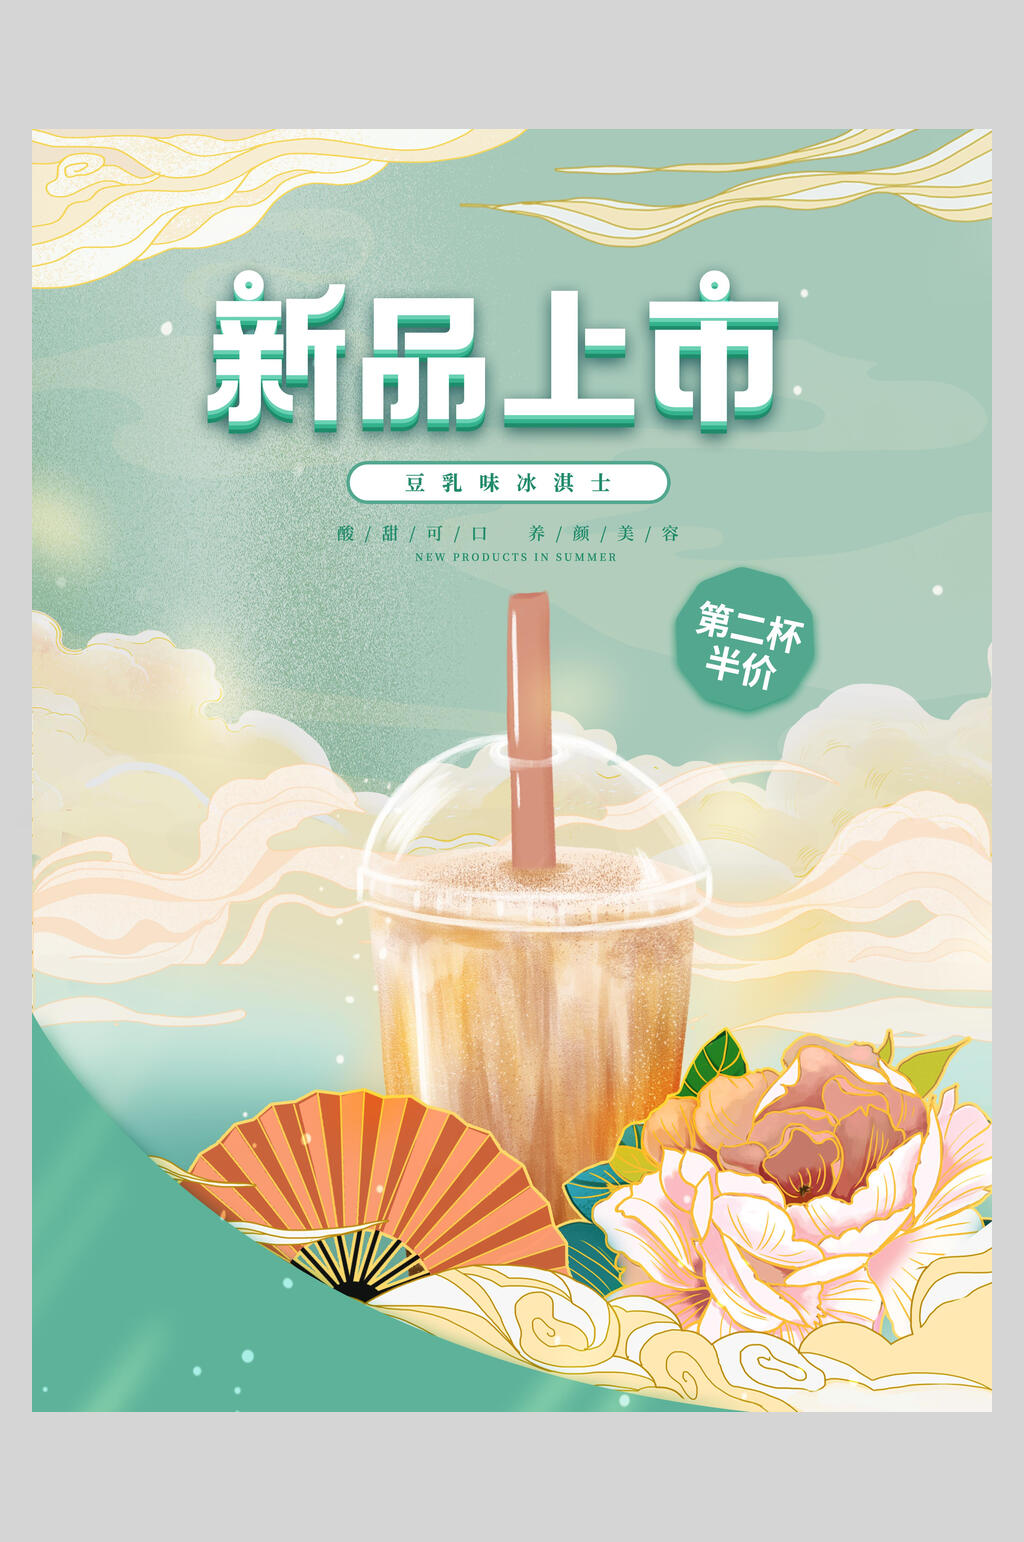 奶茶新品上市海报素材免费下载,本作品是由糖宝上传的原创平面广告